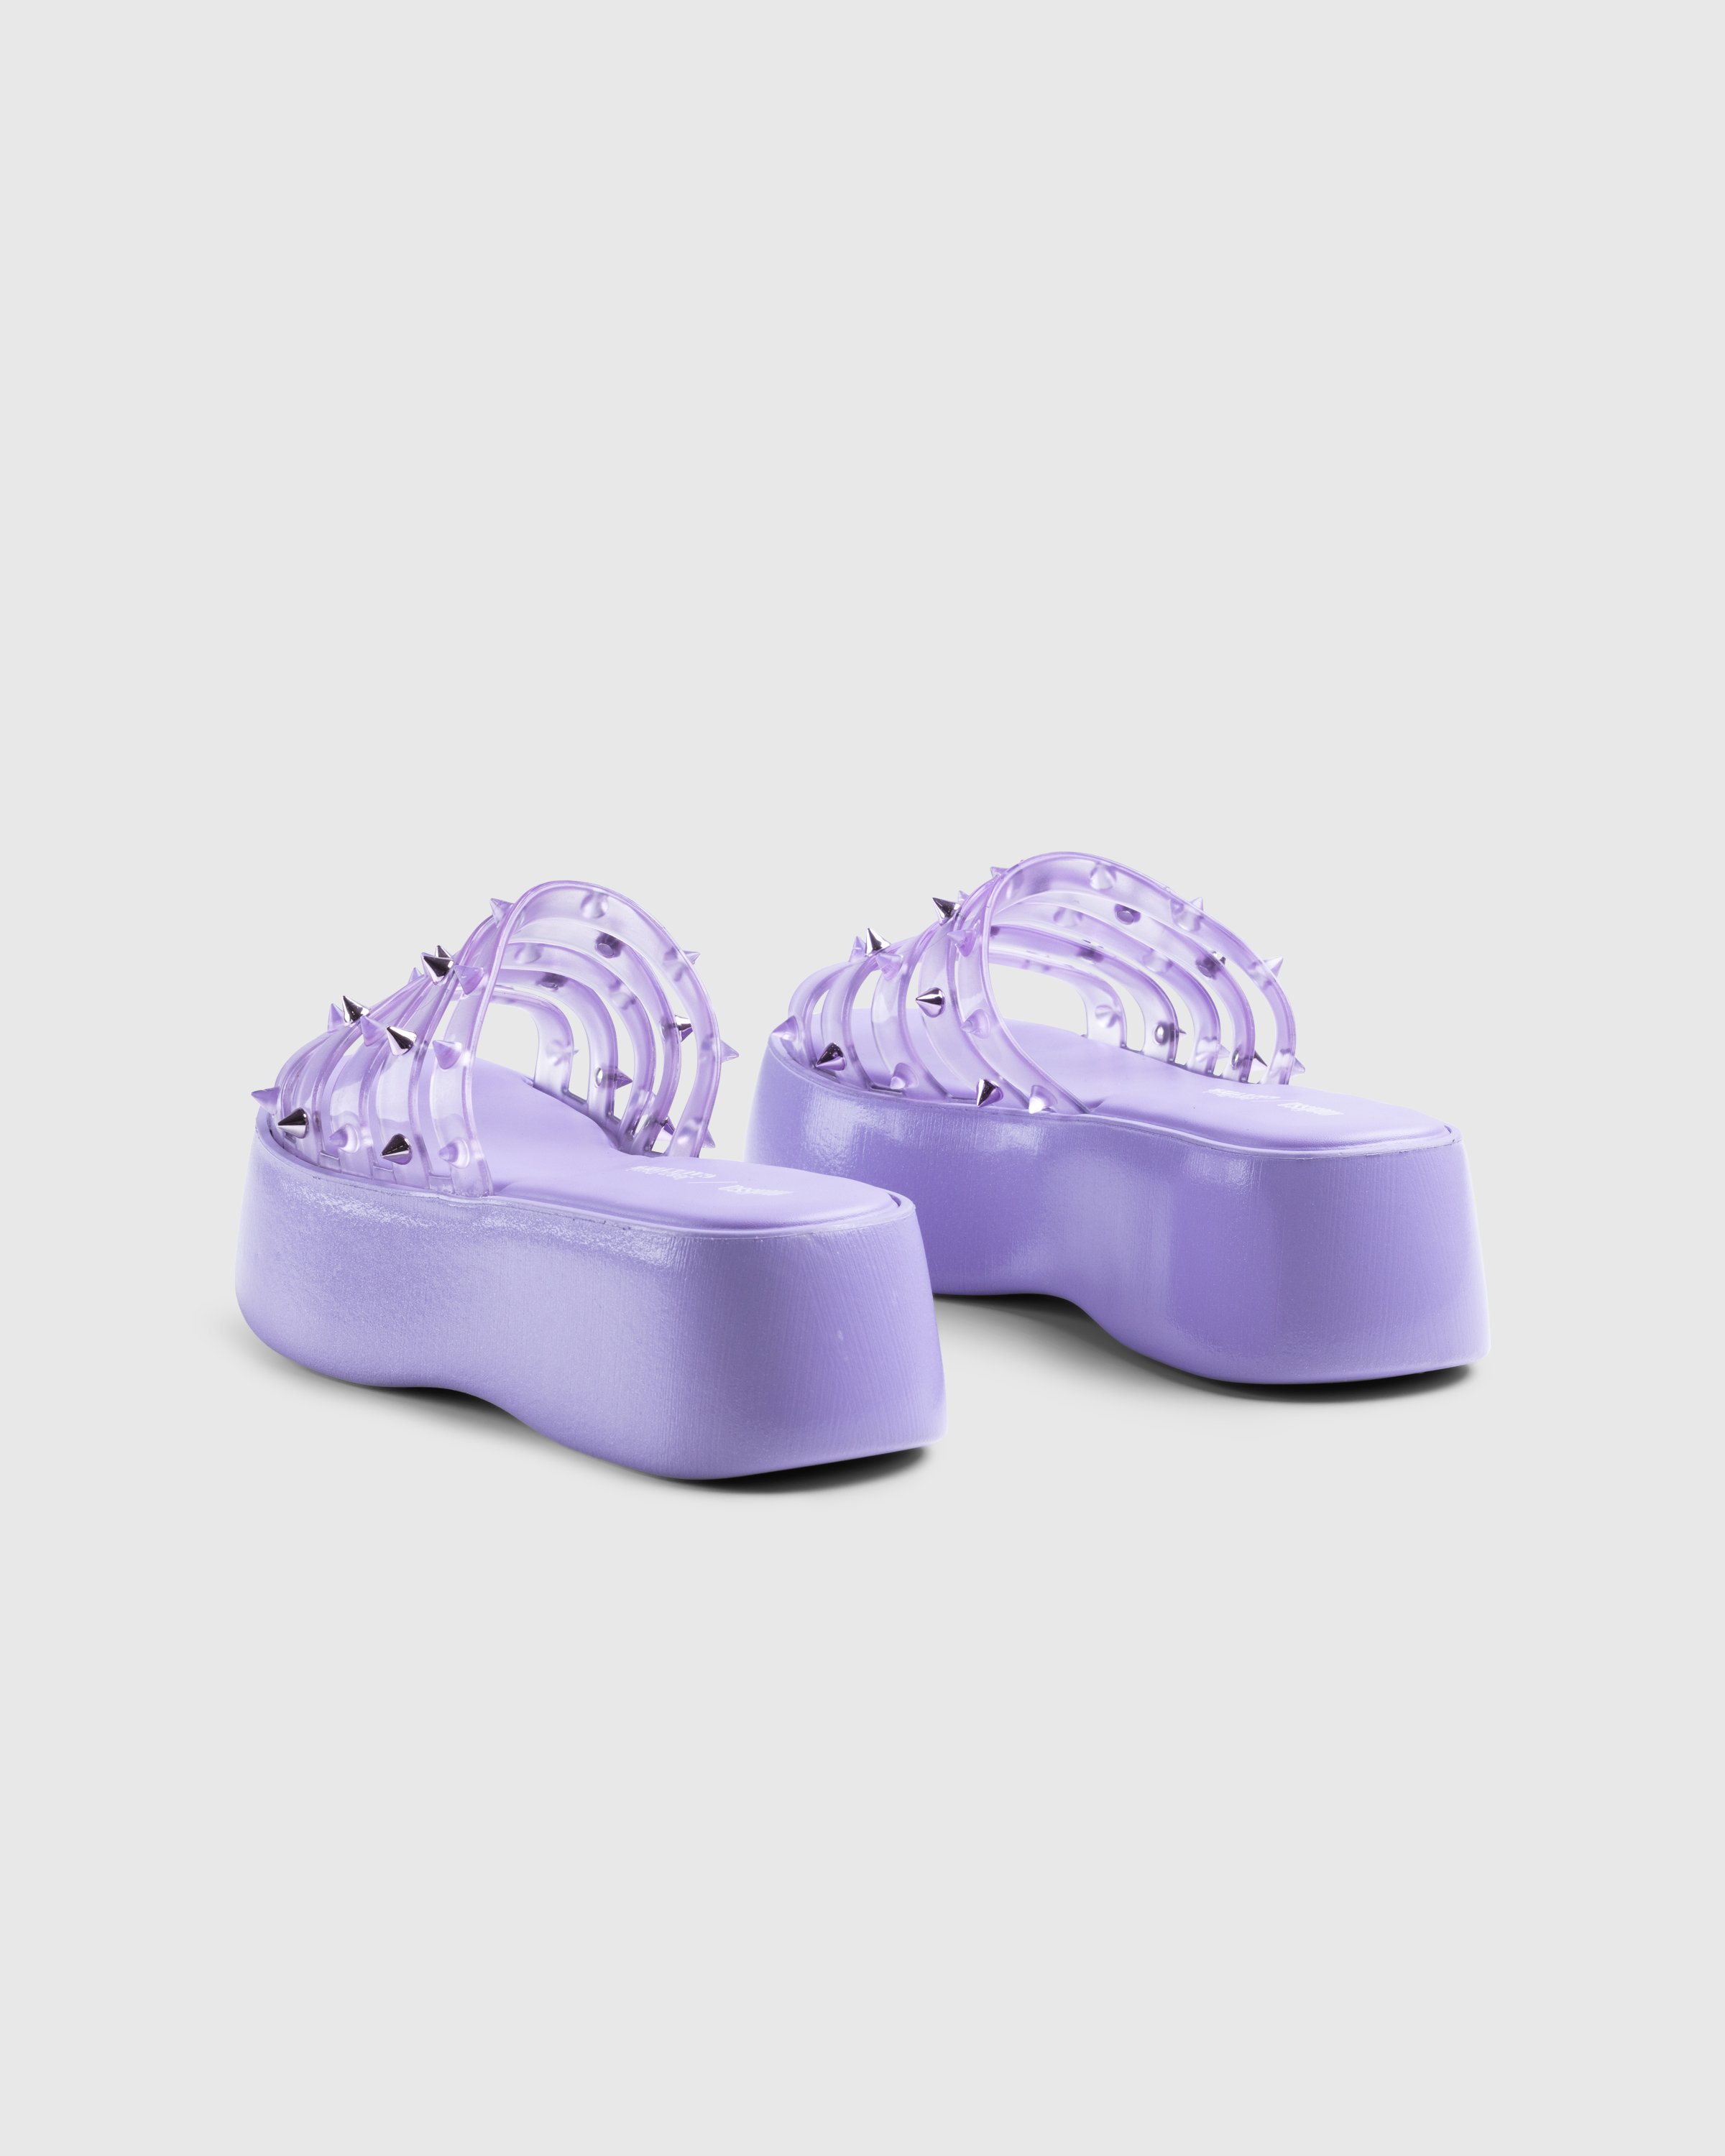 Jean Paul Gaultier x Melissa - Becky Punk Love Mule Purple - Footwear - Purple - Image 4